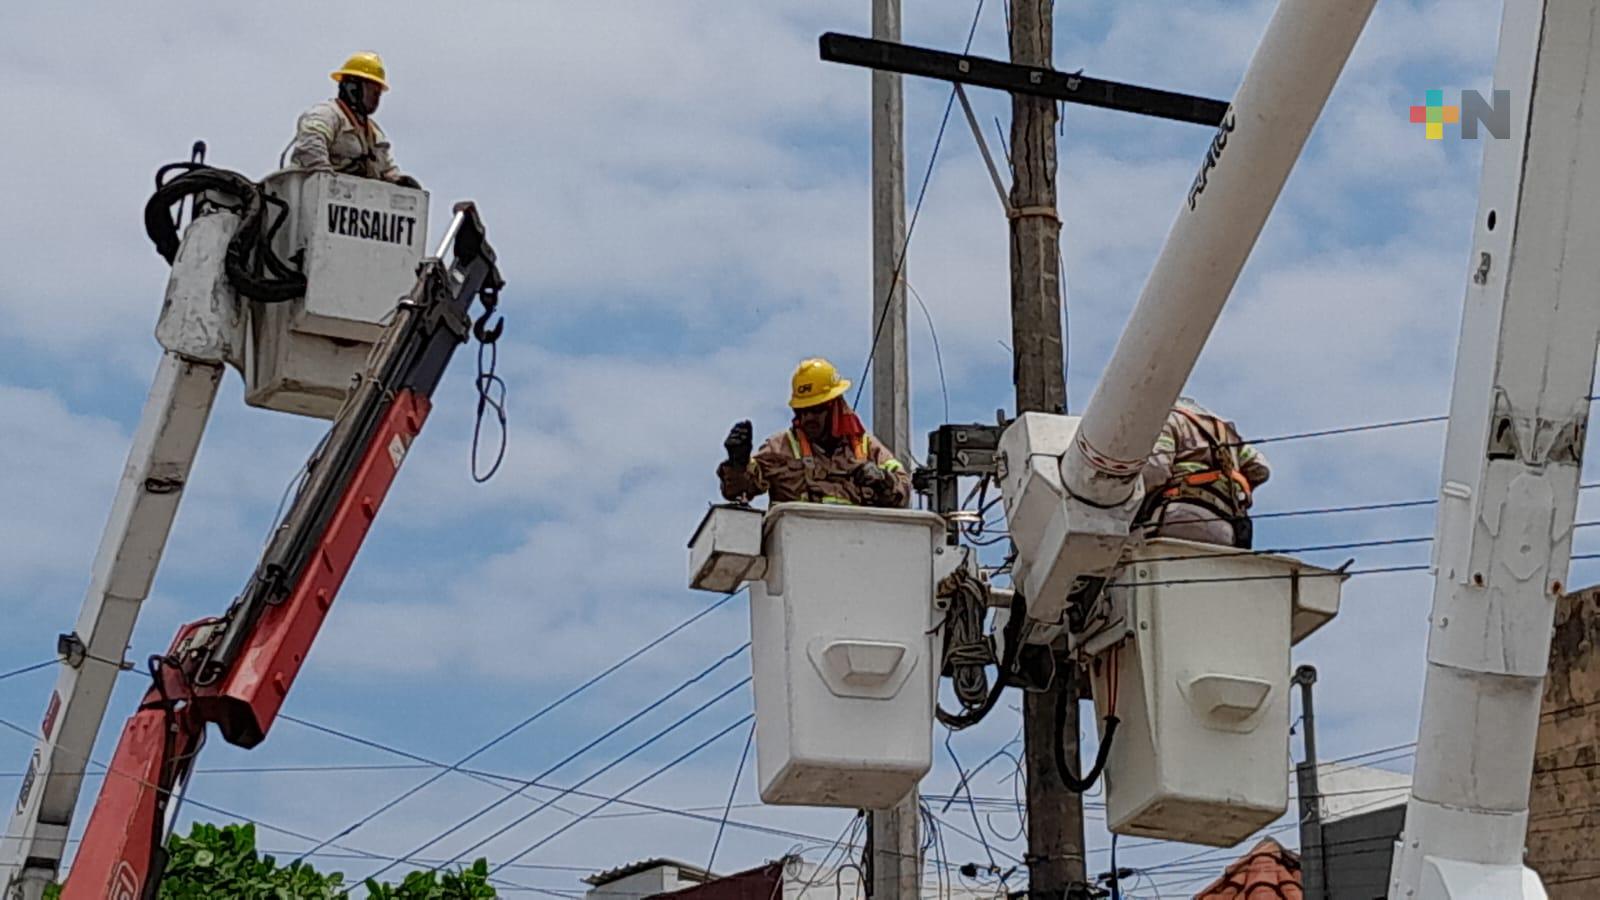 Continúa CFE sustitución de transformadores de energía eléctrica en Veracruz-Boca del Río